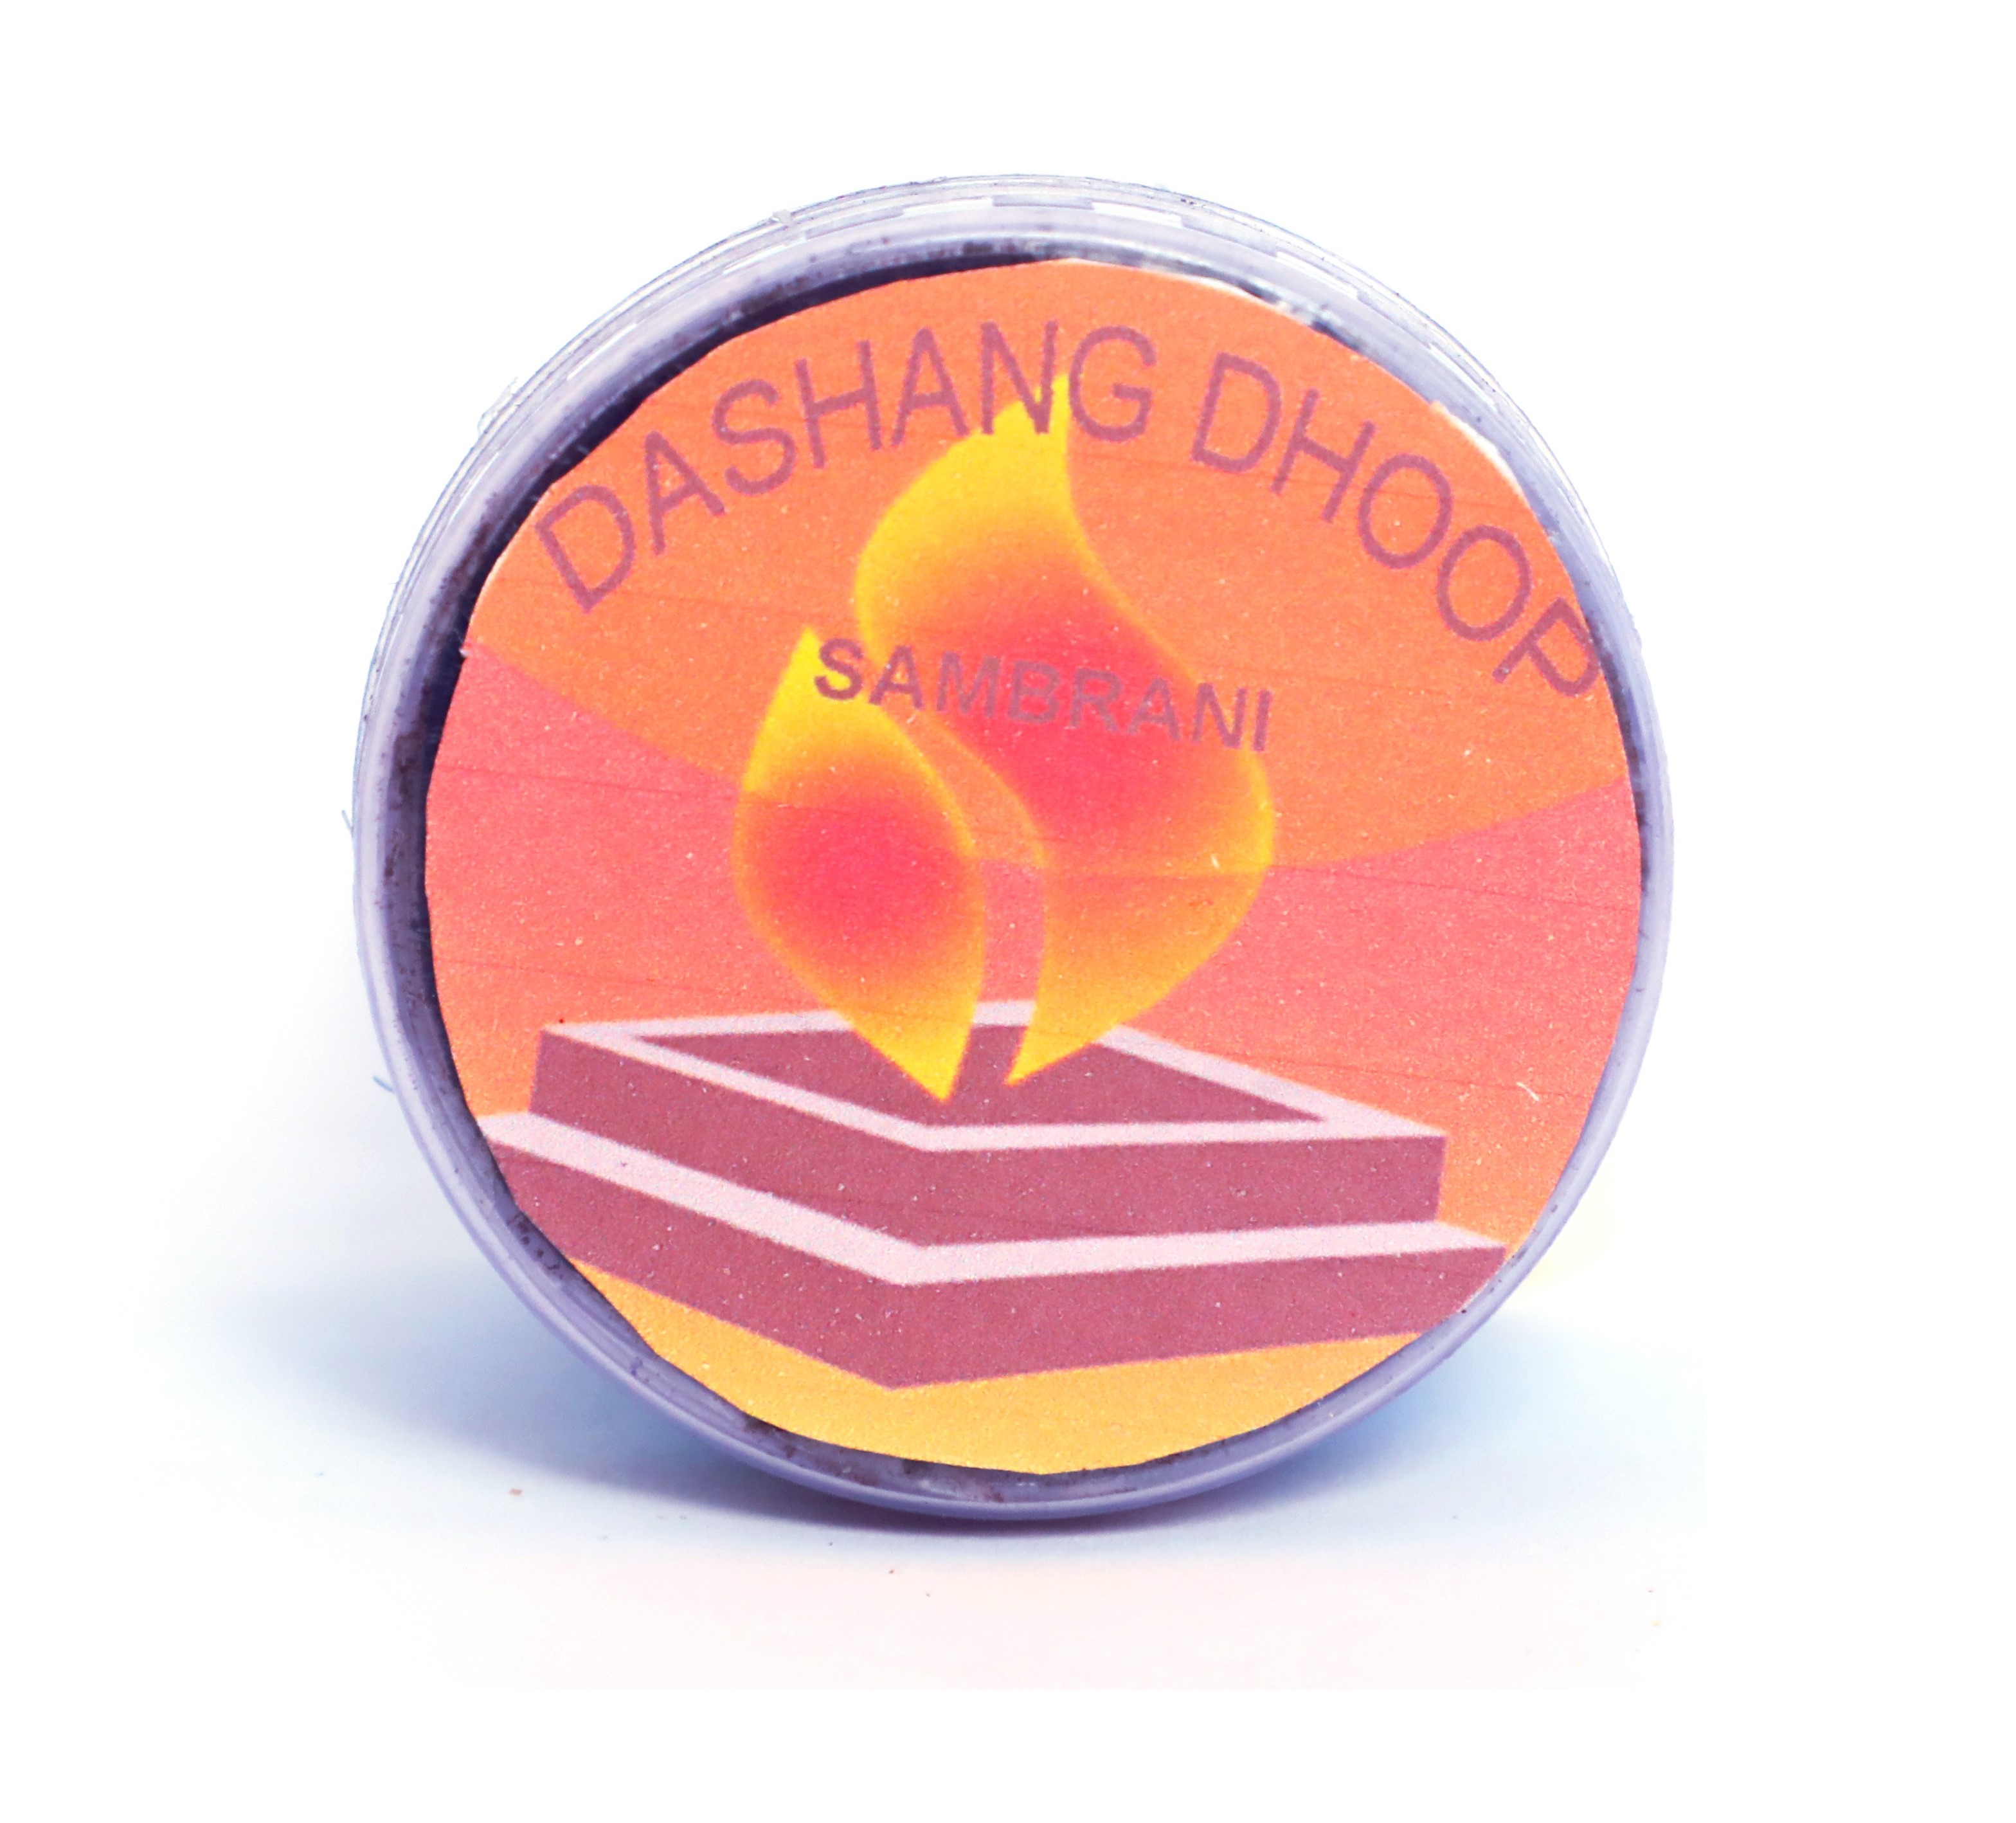 Dashang Dhoop Pack of 50 Grams